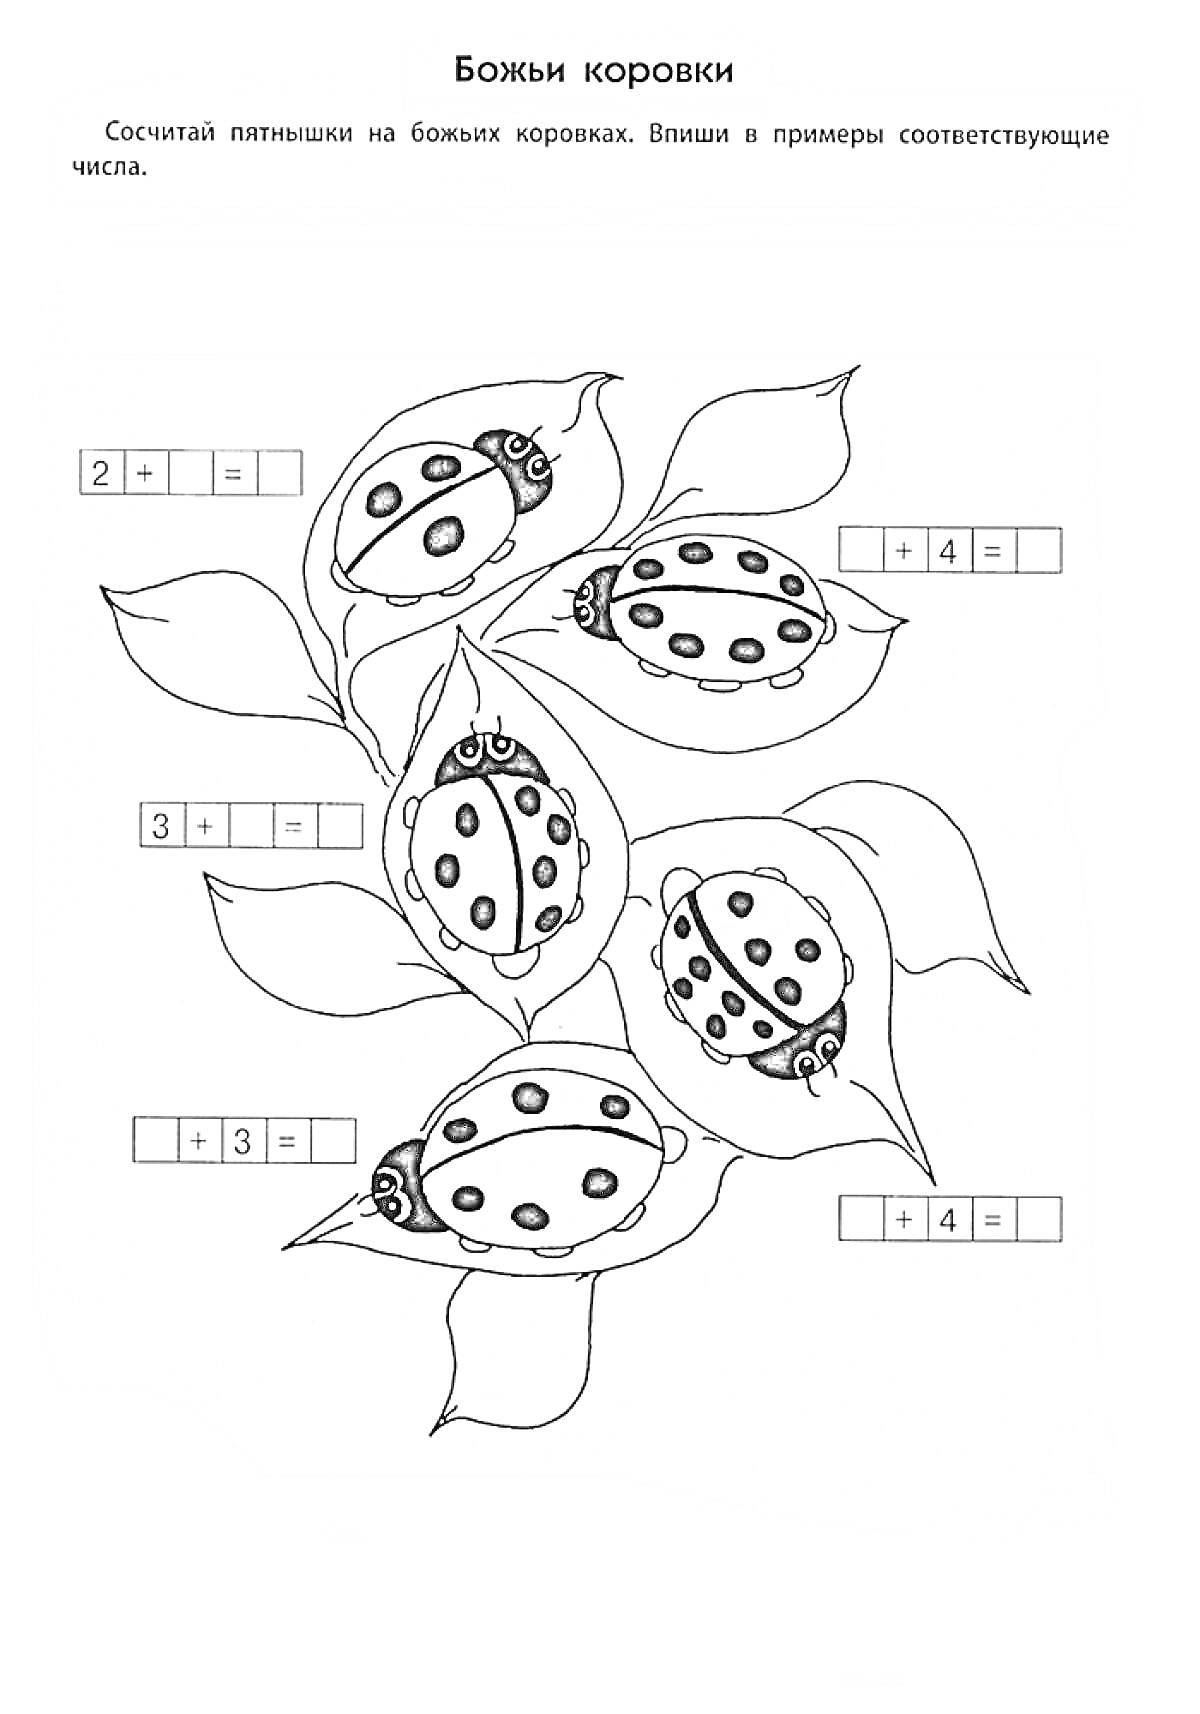 Раскраска Божьи коровки на листьях с математическими примерами